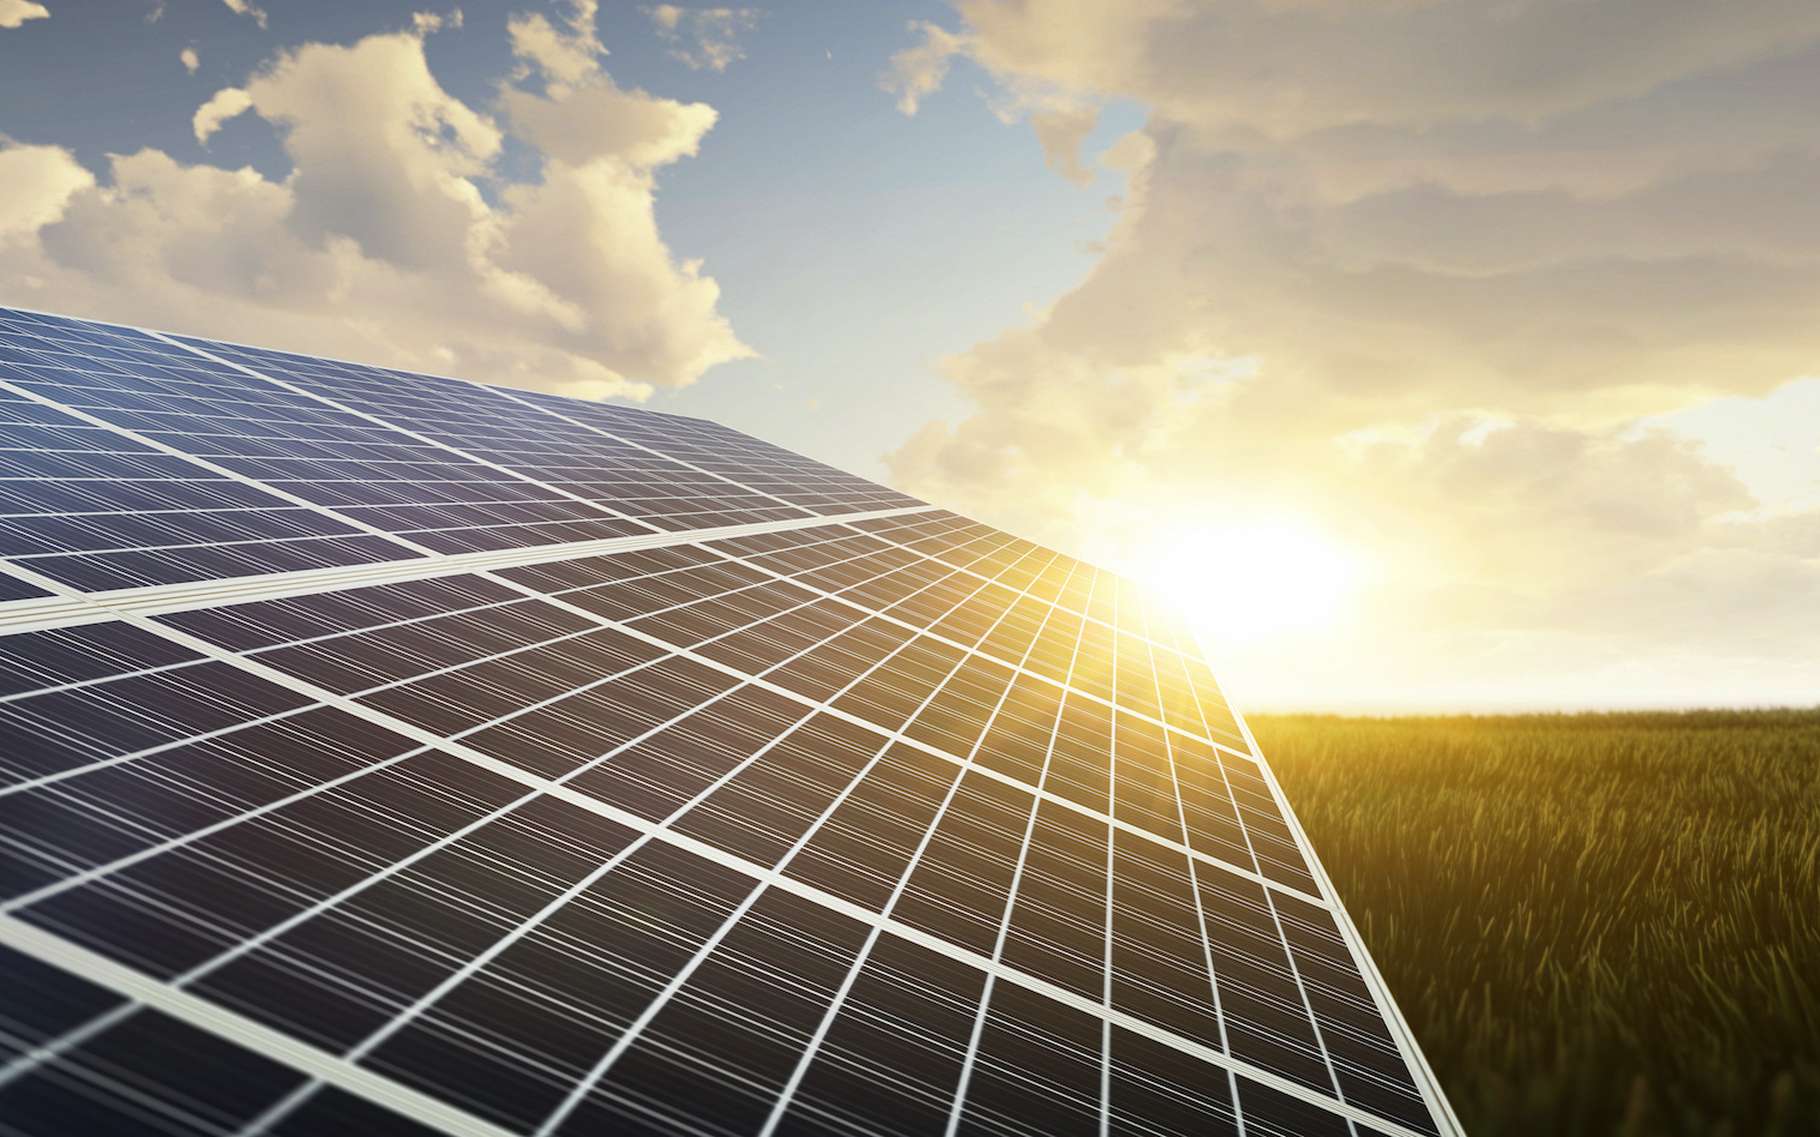 Intégrer des nanofils d’arséniure de gallium (GaAs) au-dessus d’une cellule solaire photovoltaïque pourrait doubler son efficacité pour un prix compétitif. © Jess rodriguez, Adobe Stock